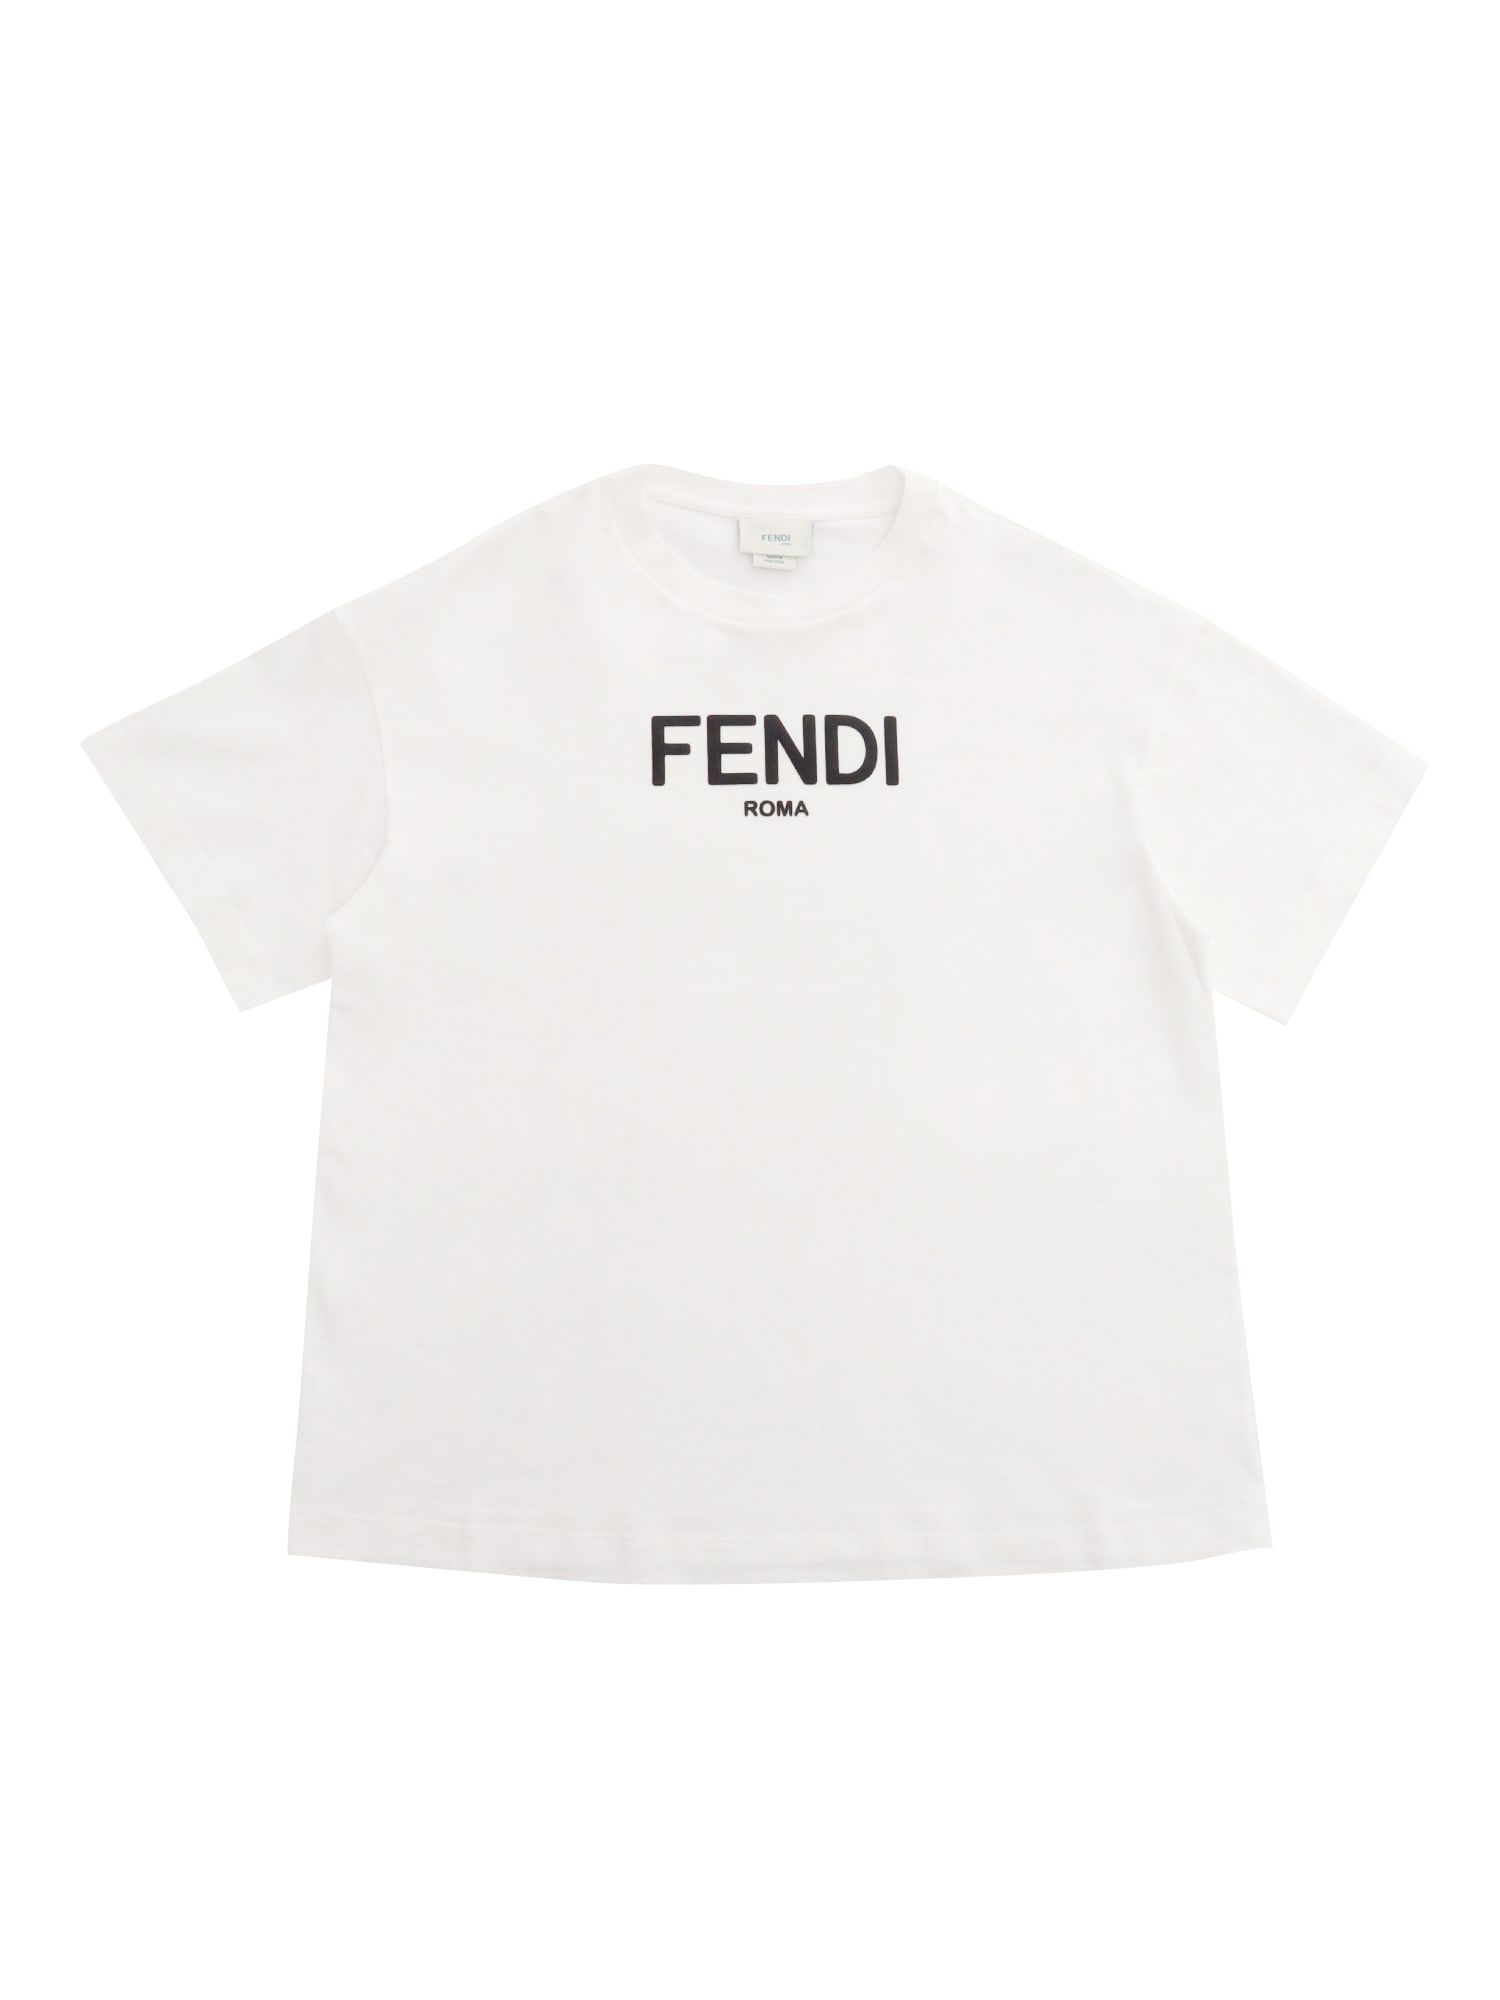 Fendi Kids' White  T-shirt